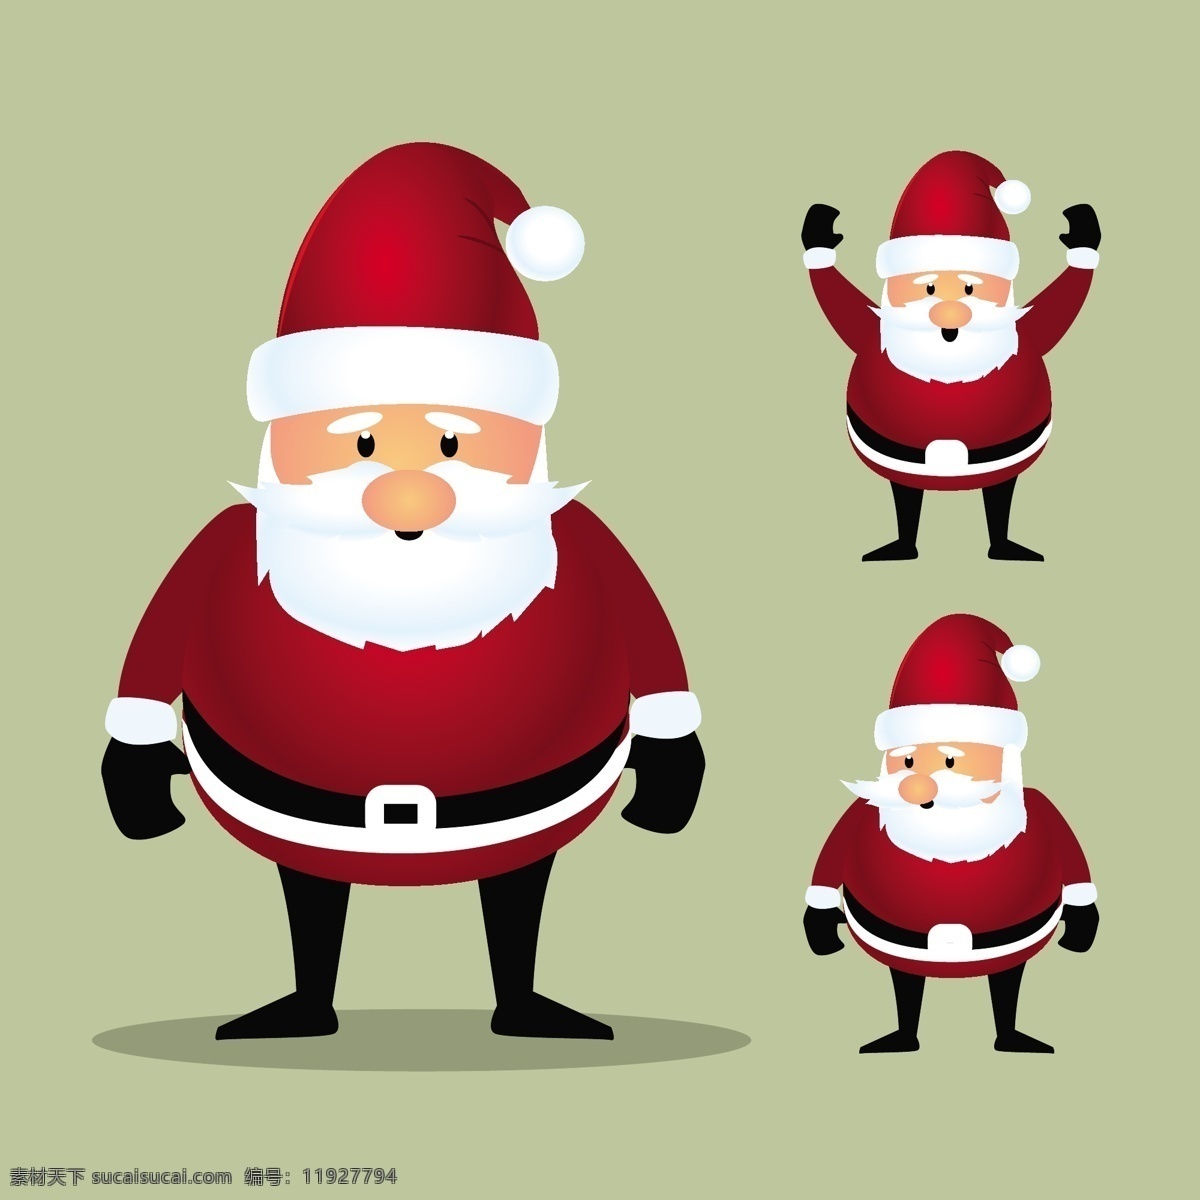 圣 塔克 劳斯 收藏 圣诞节 圣诞快乐 卡通 冬天快乐 克劳斯 性格 圣诞老人 庆祝 节日 有趣 的卡 通 人物 节日快乐 季节 快乐 十二月 红色